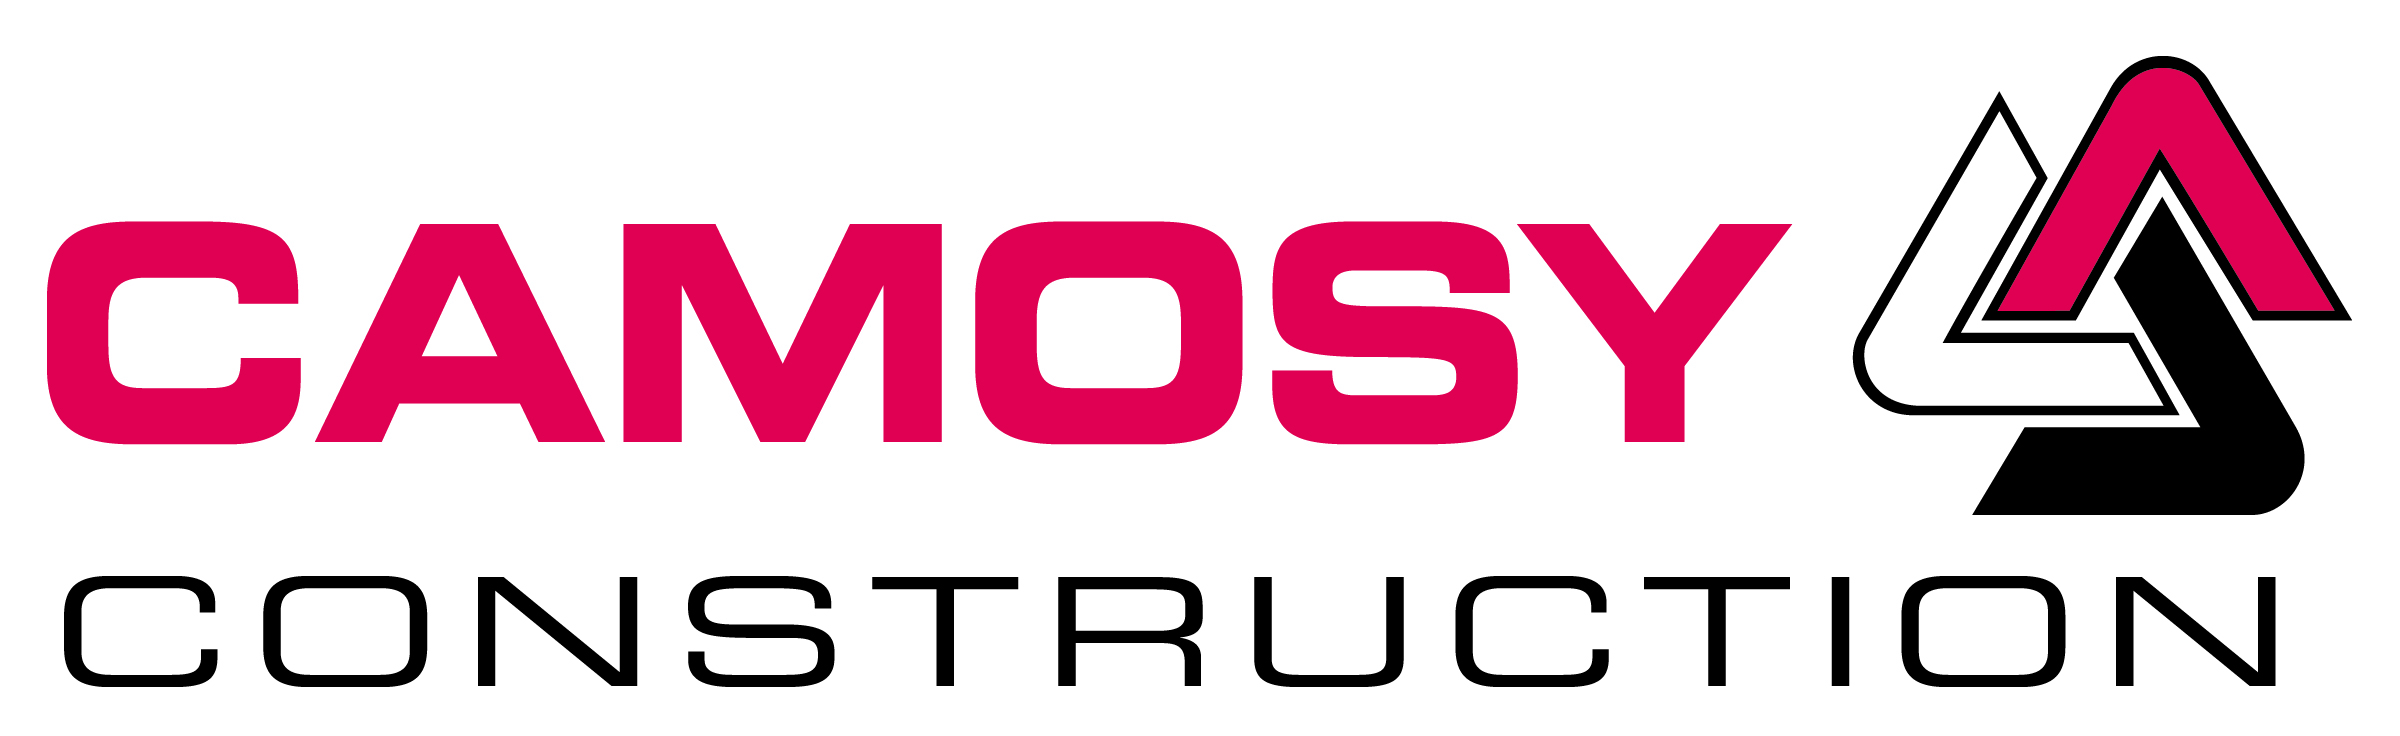 Camosy Construction Logo